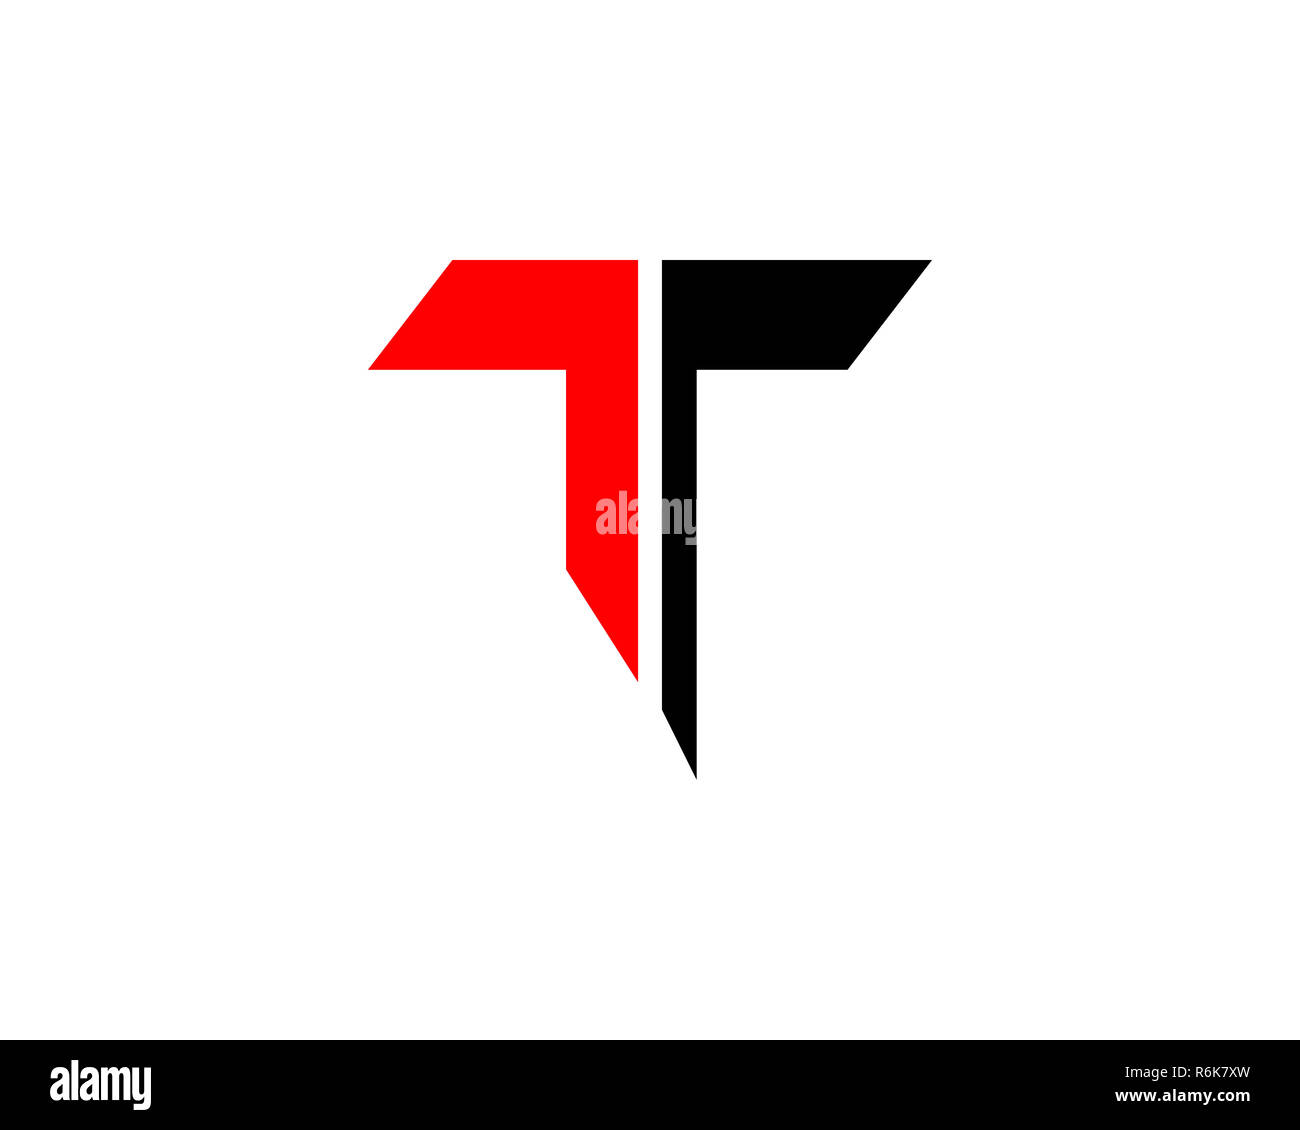 t letter logo Stock Photo